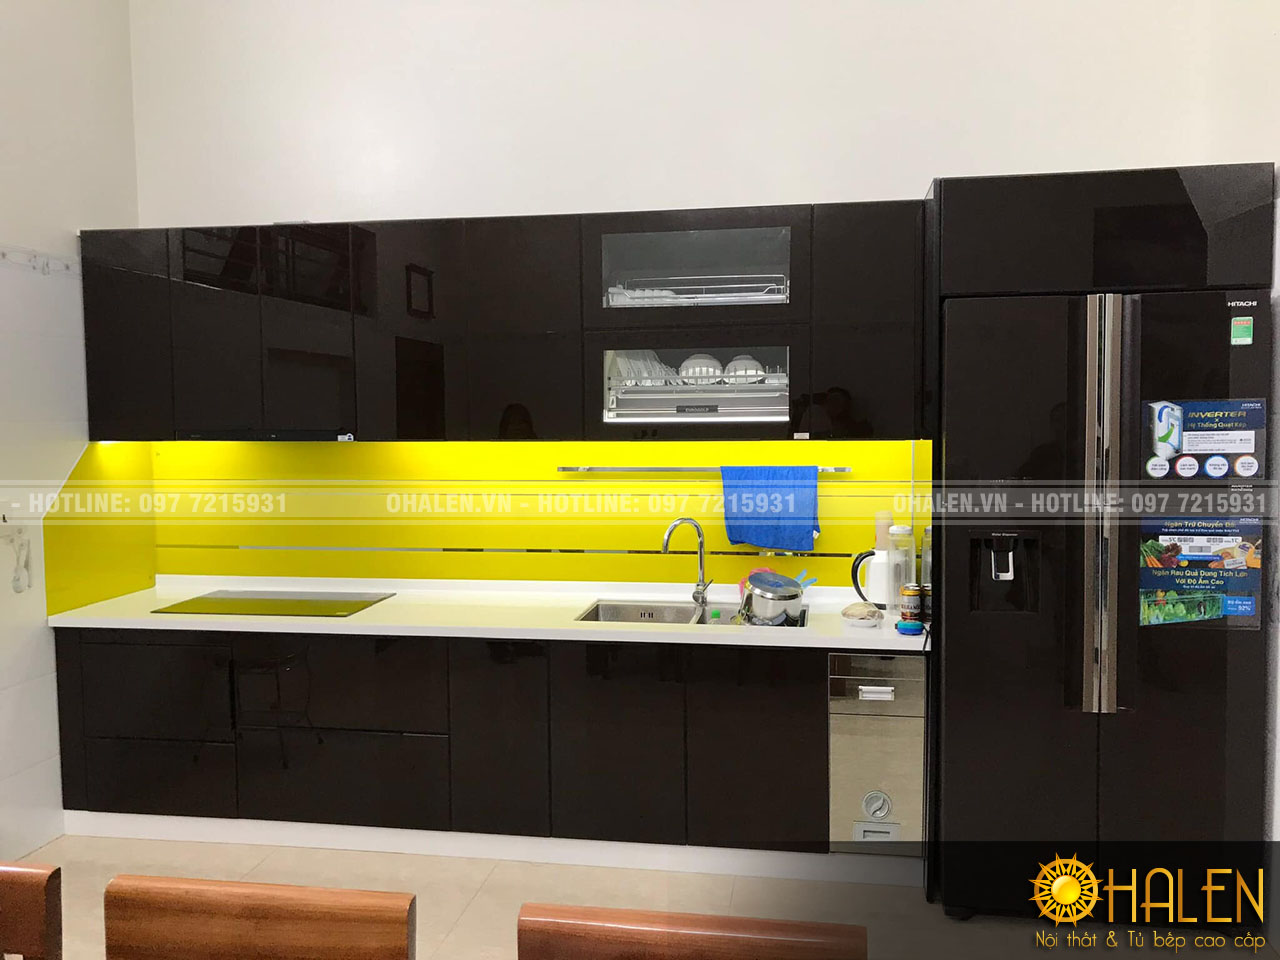 Chất liệu cánh kính sáng bóng và dễ dàng vệ sinh , lau chùi là ưu điểm lớn của loại tủ bếp này